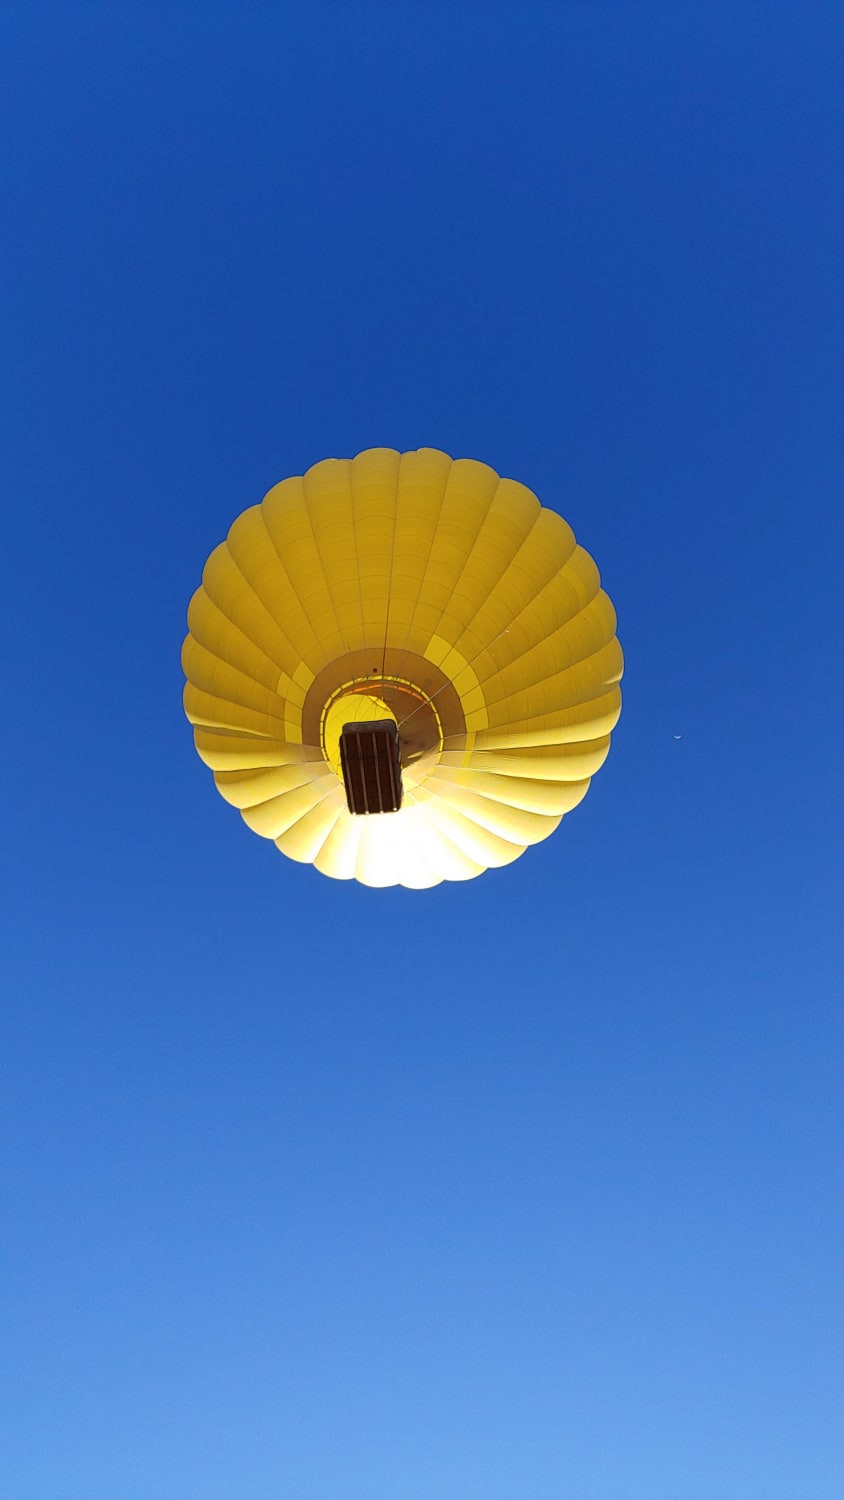 Shot I got of a hot-air balloon in Taos NM